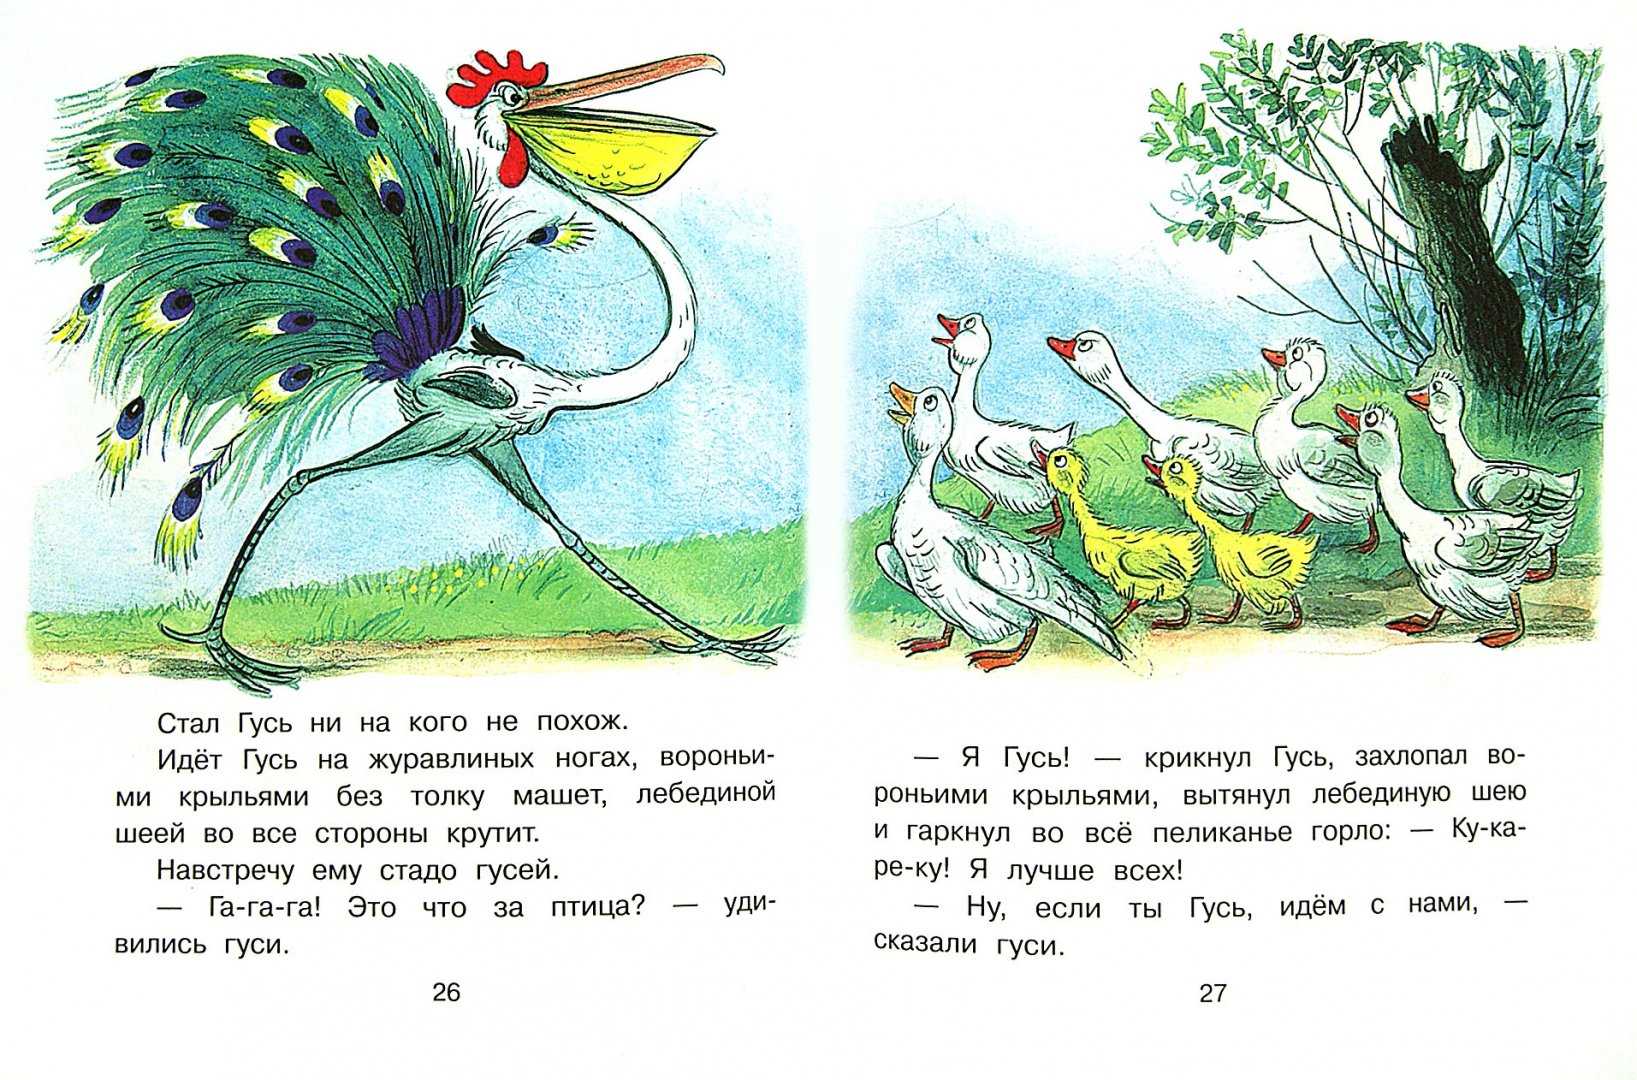 Читать про гуся. Что за птица книга Сутеева. Это что за птица Сутеев. Сутеев Гусь. Сказка Сутеева это что за птица.